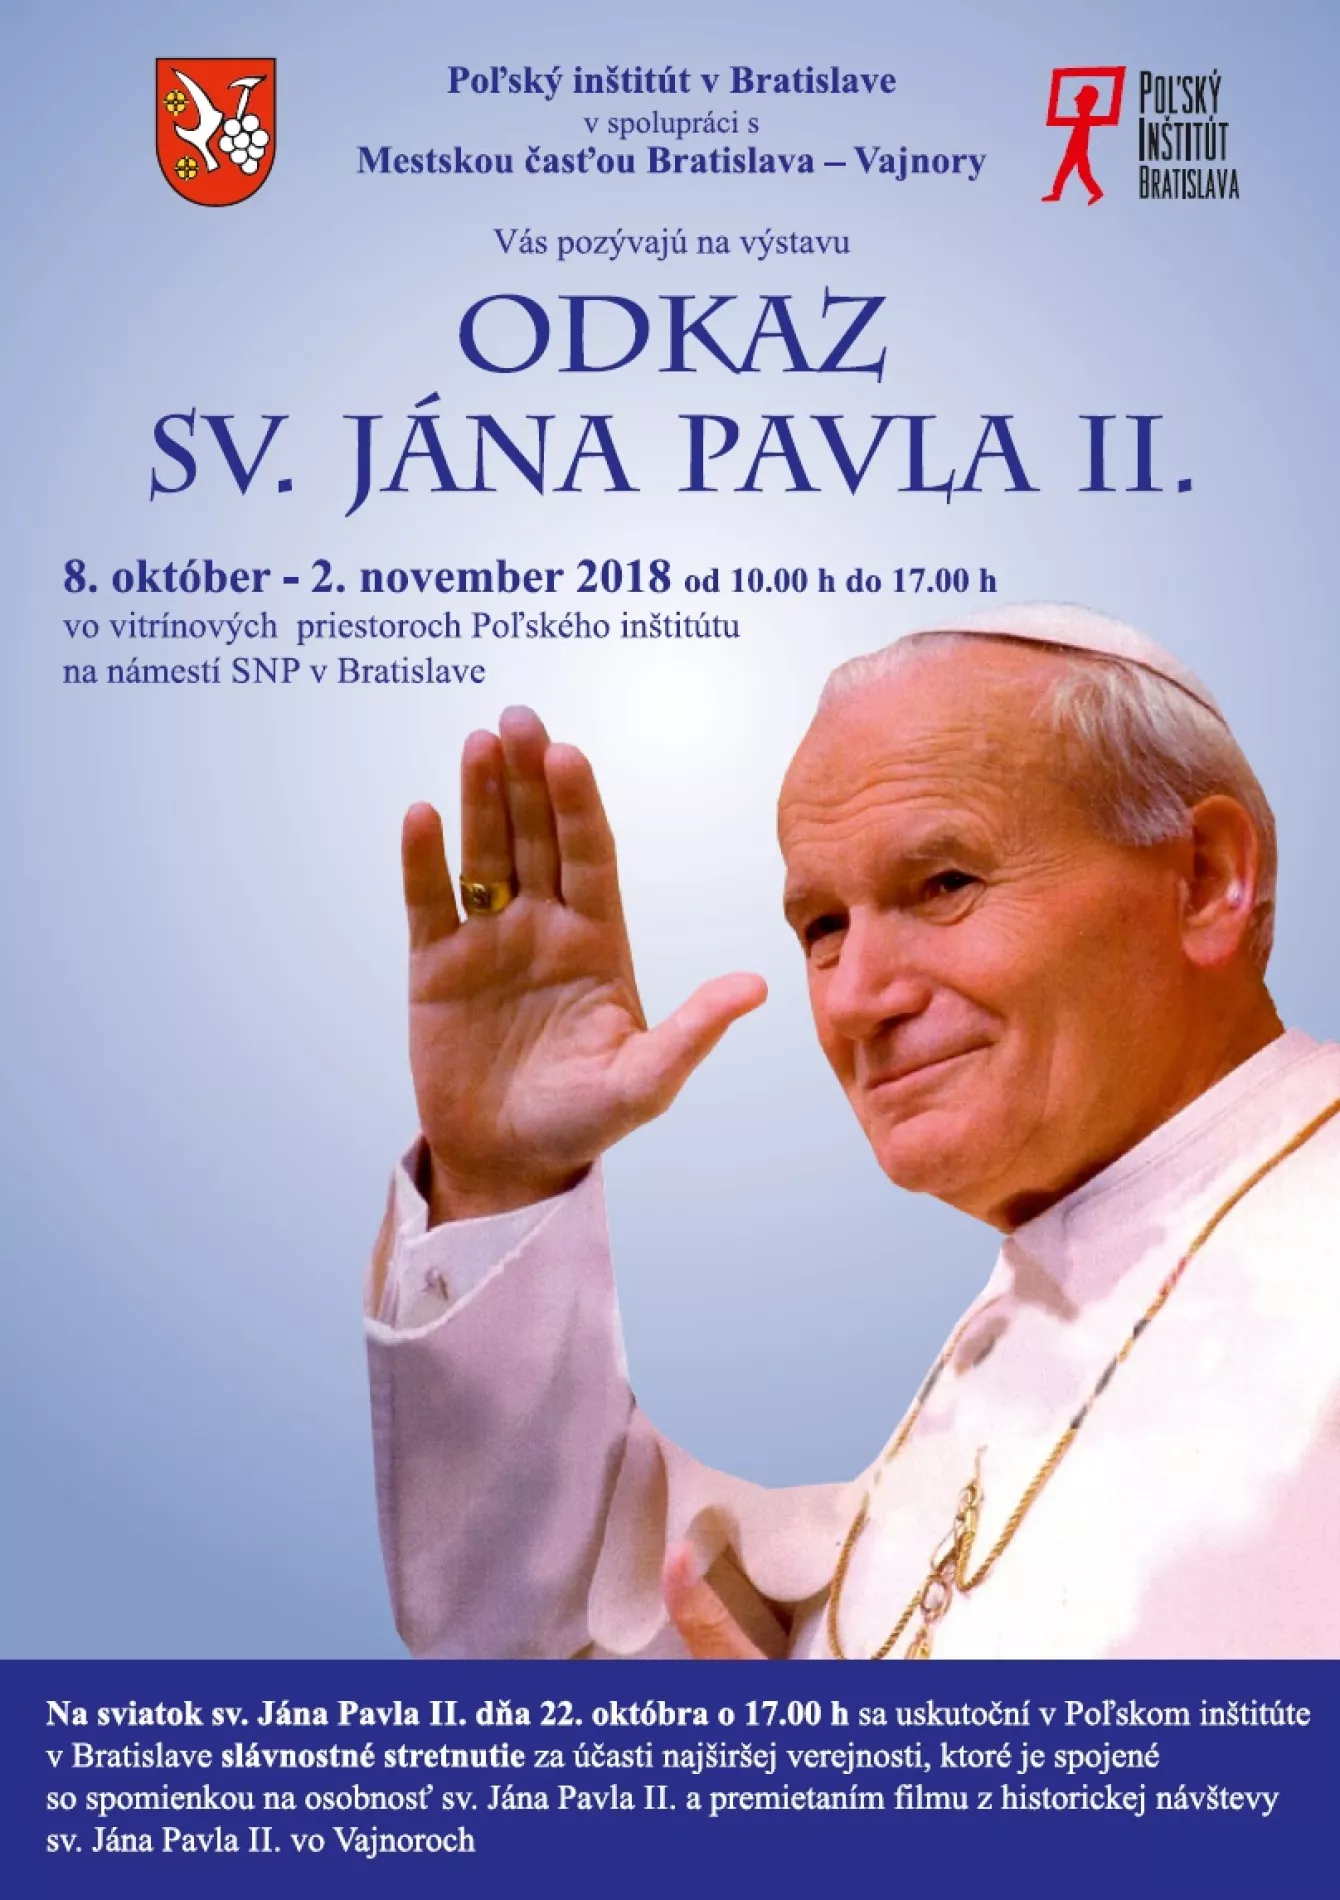 Odkaz sv. Jána Pavla II. výstava